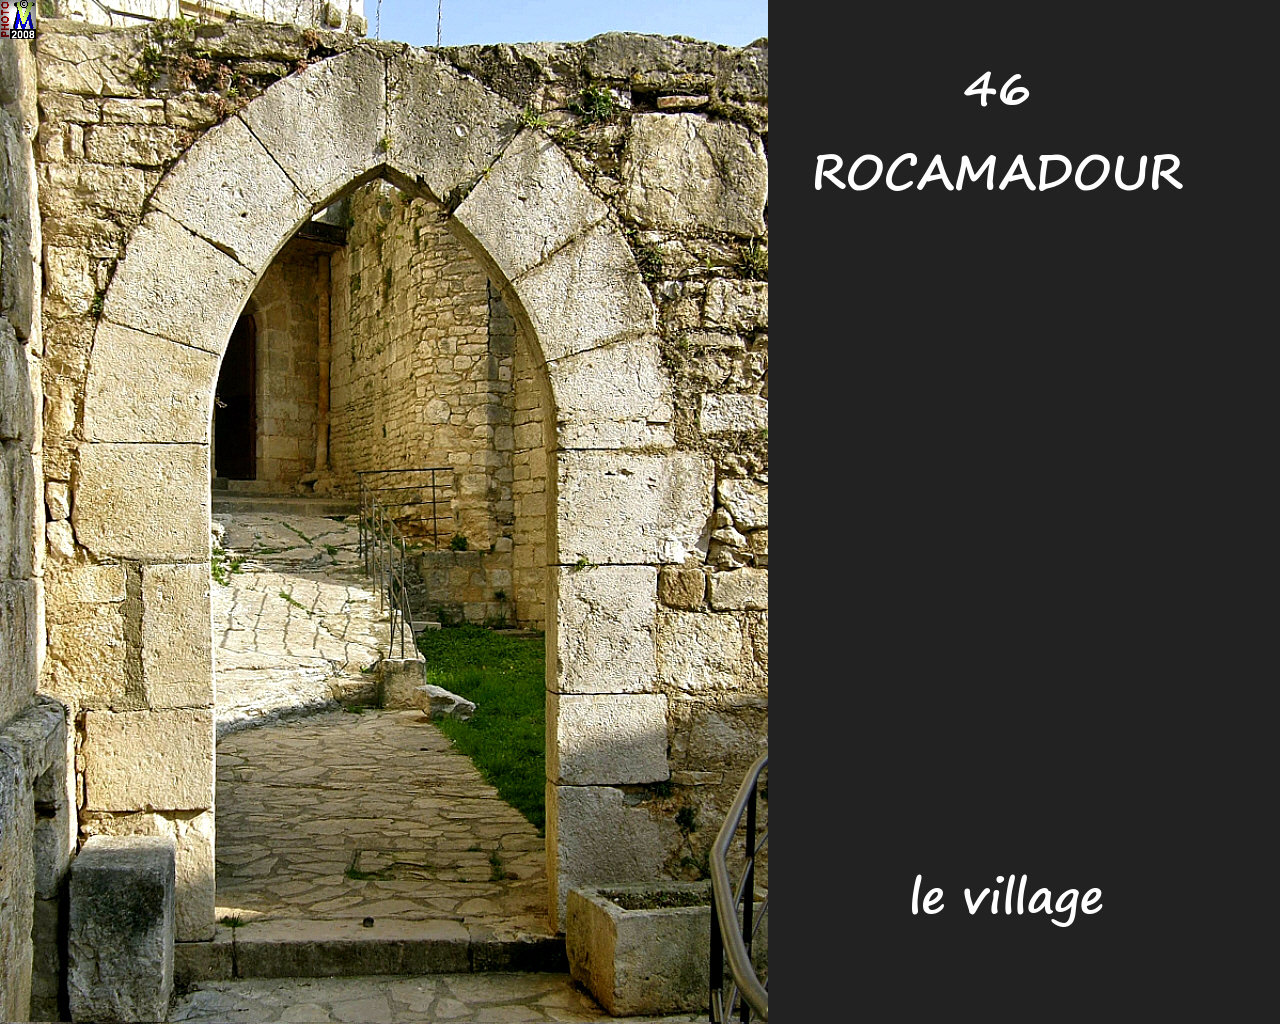 46ROCAMADOUR_village_174.jpg